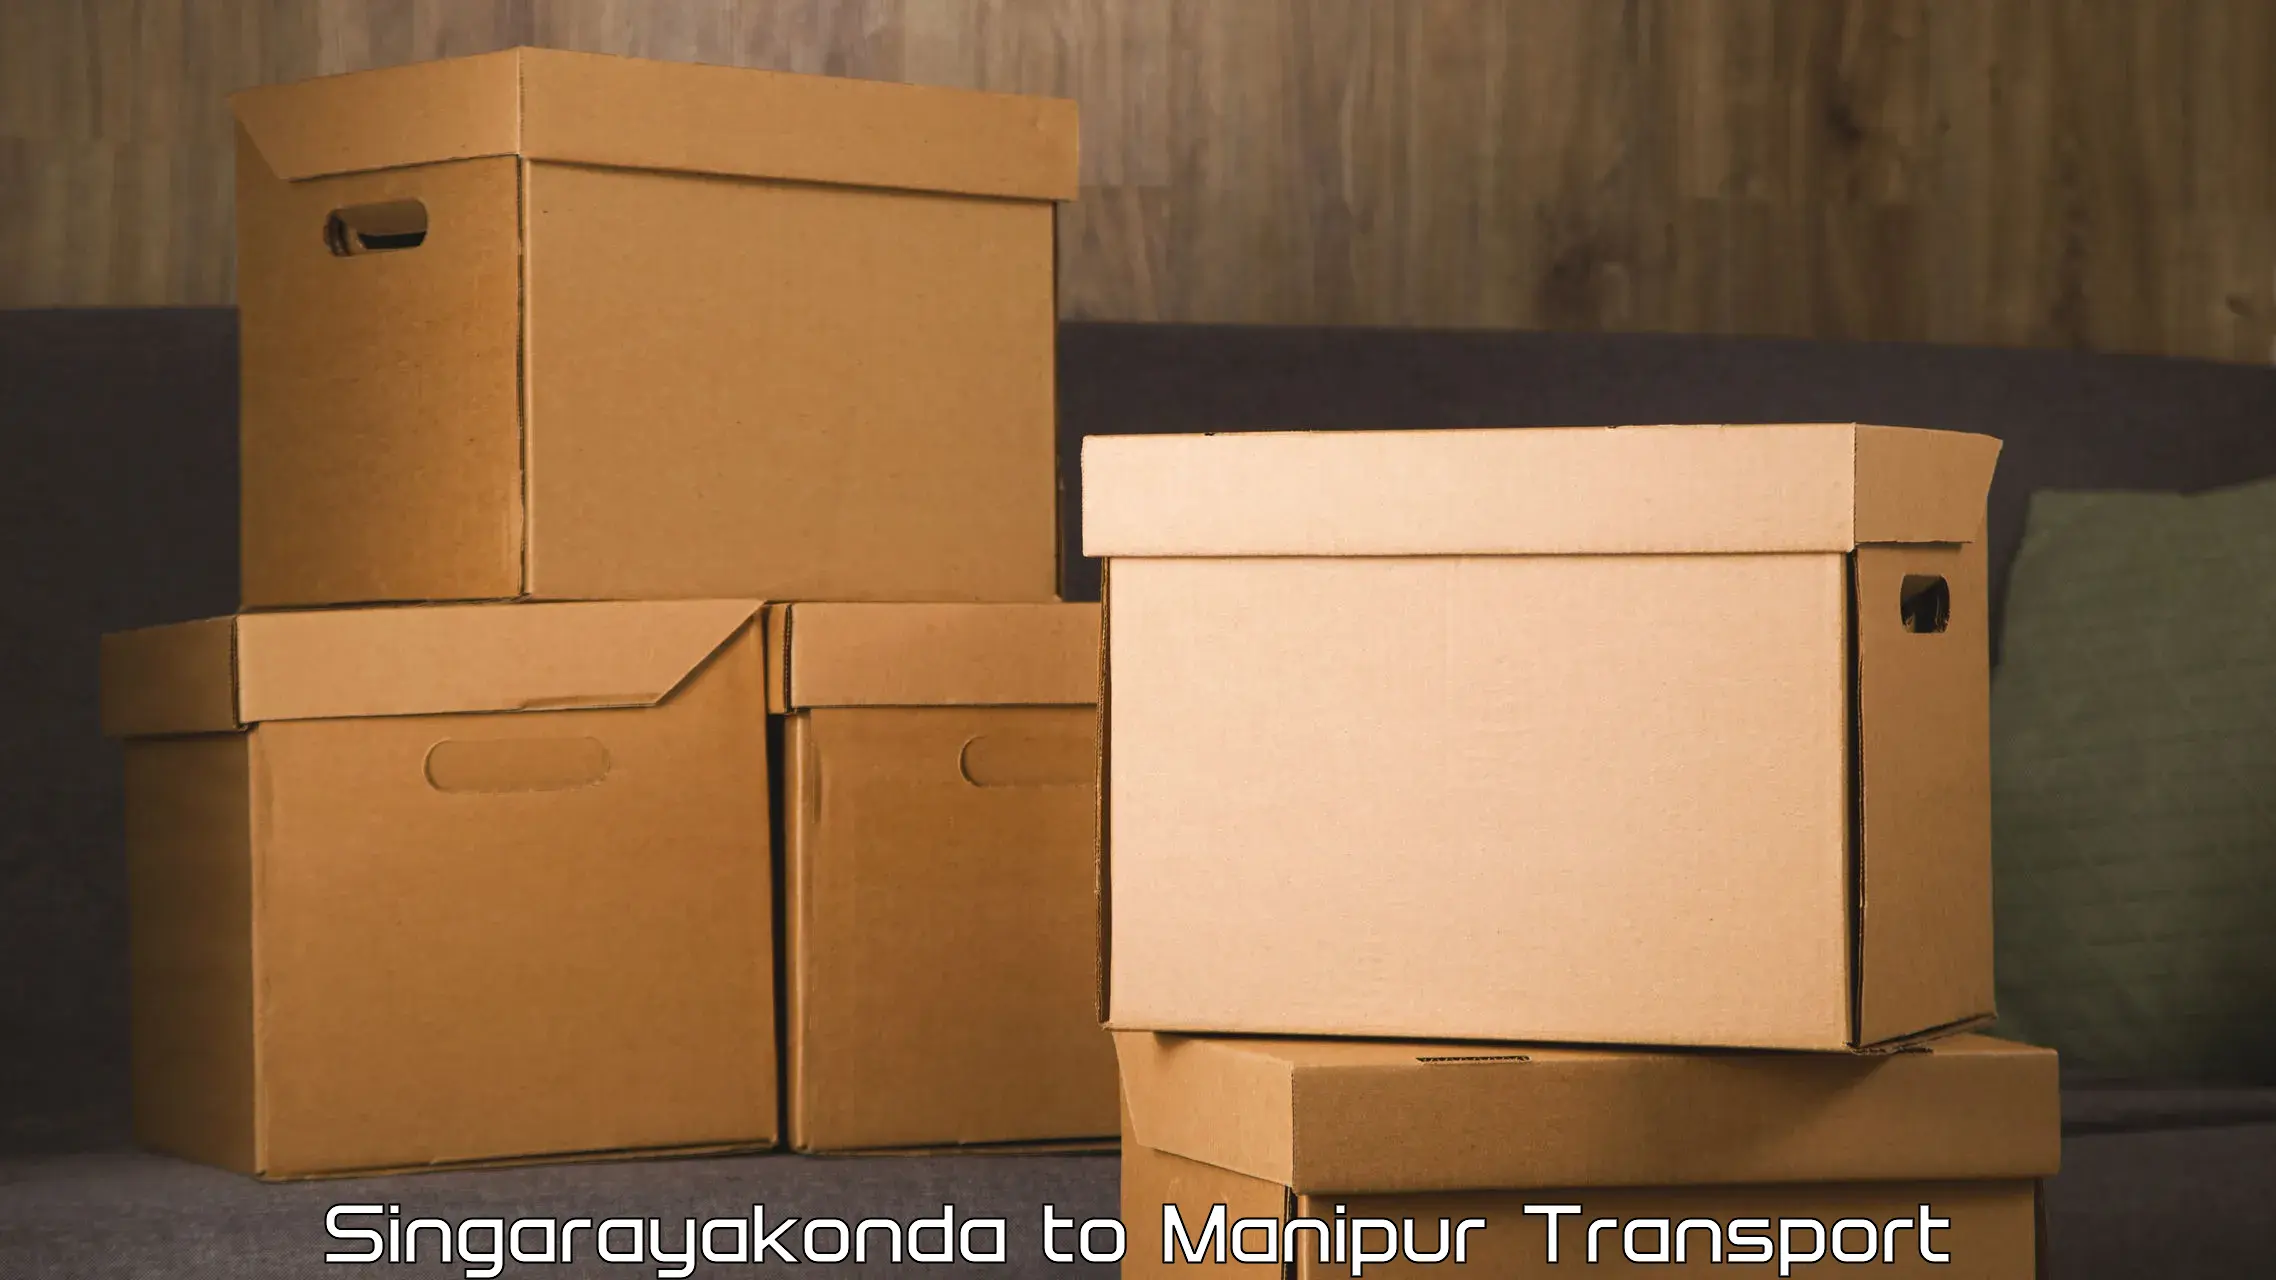 Transport in sharing Singarayakonda to Moirang